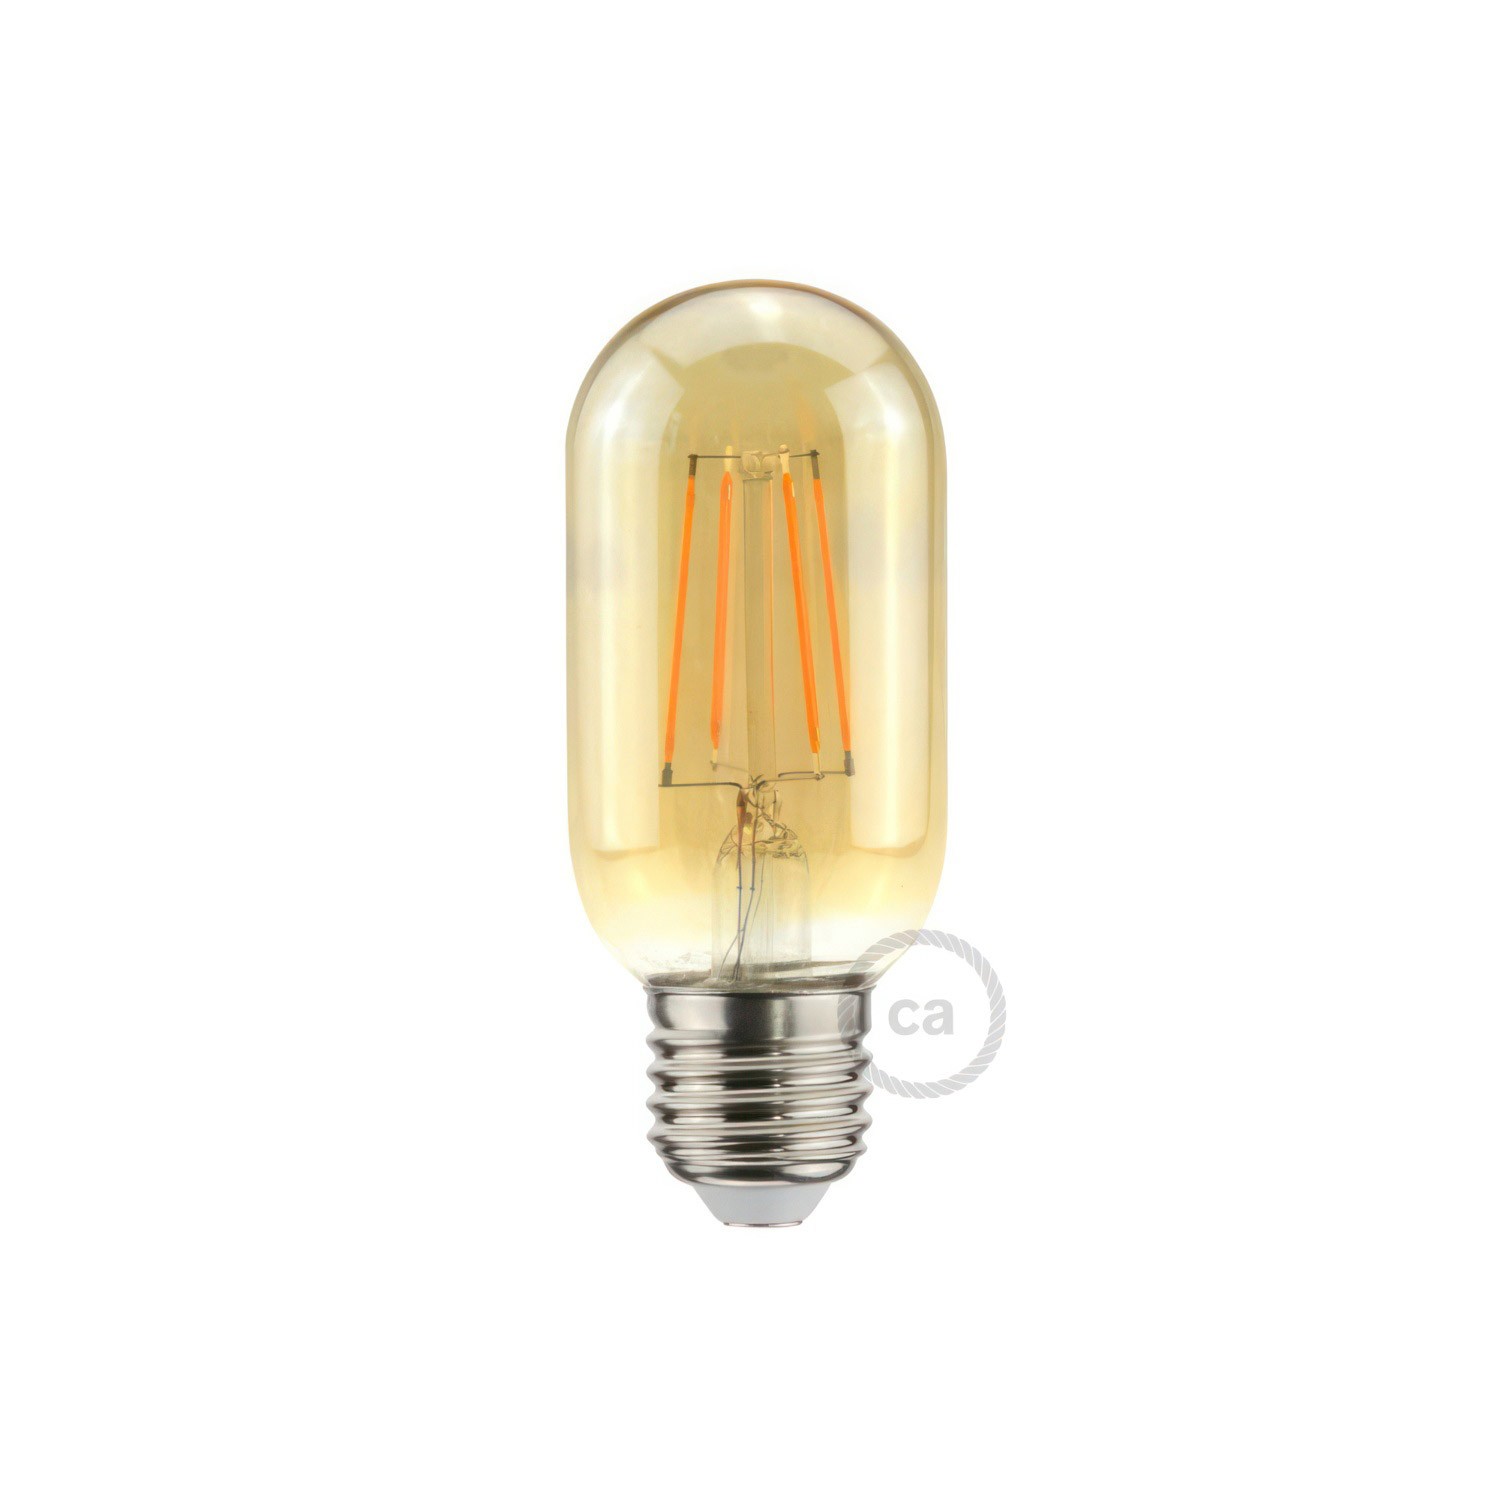 LED Glühbirne gold ovalförmig T45 5W E27 dimmbar 2000K